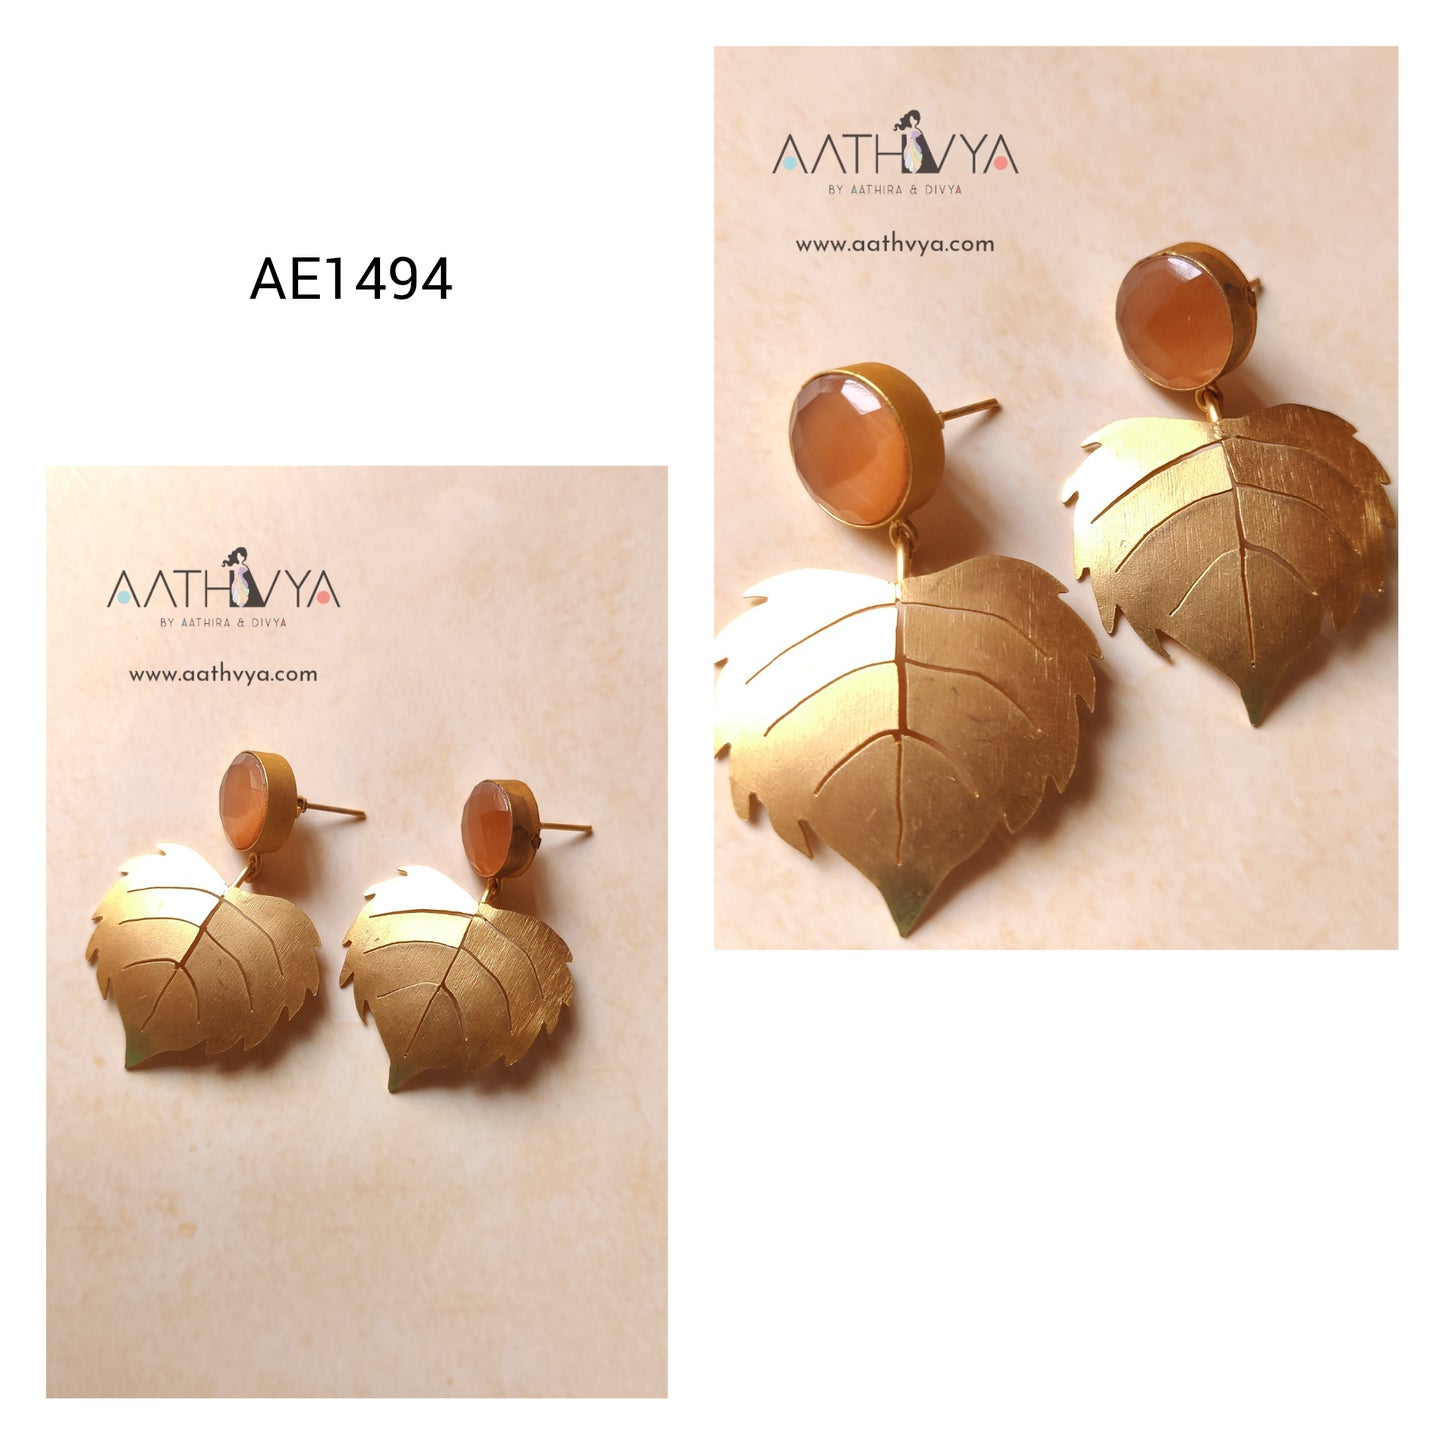 AE1494